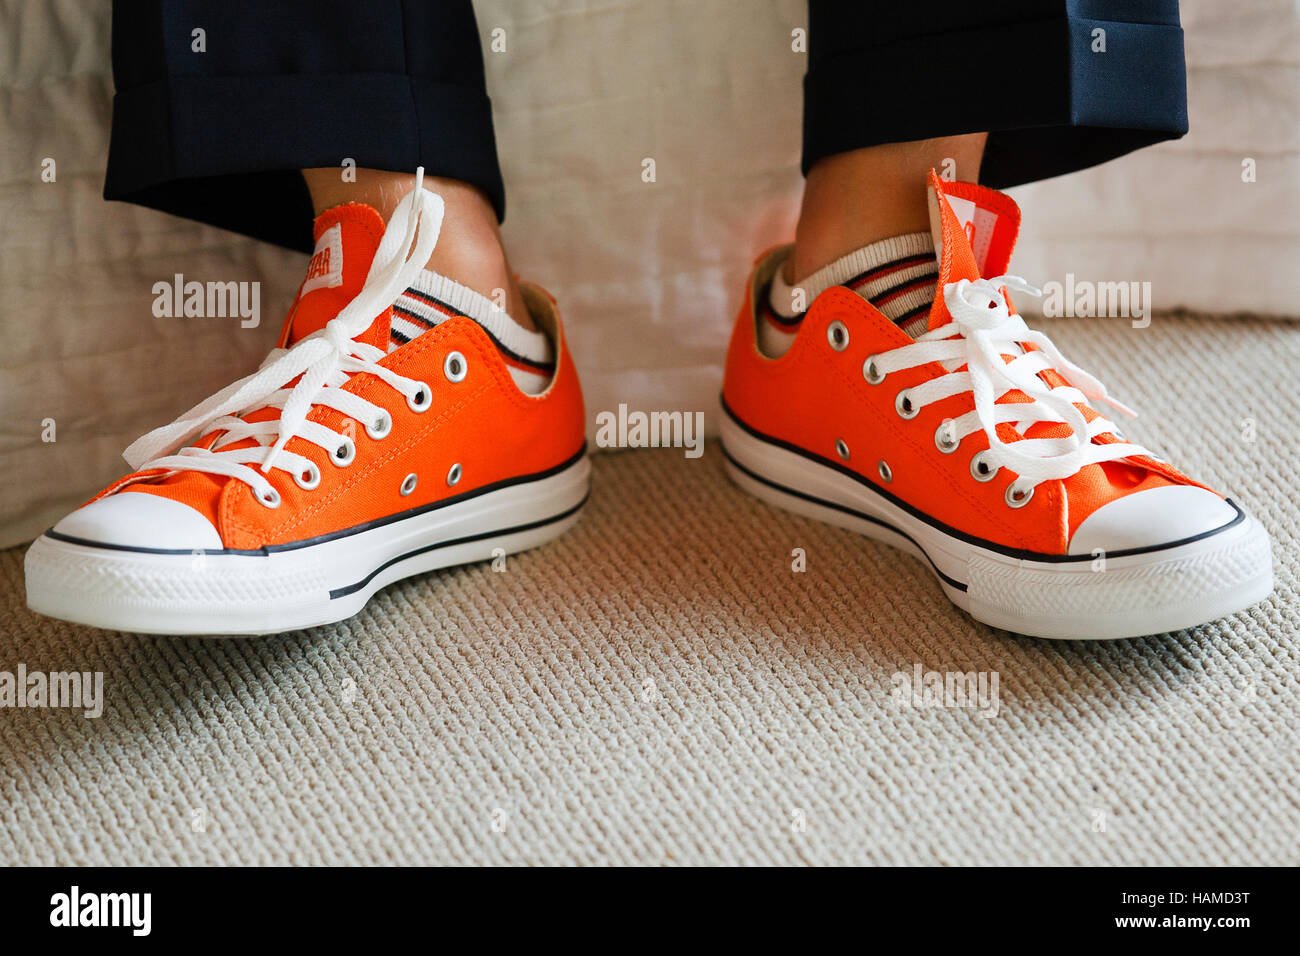 Garçon en costume et chaussures Converse orange Photo Stock - Alamy